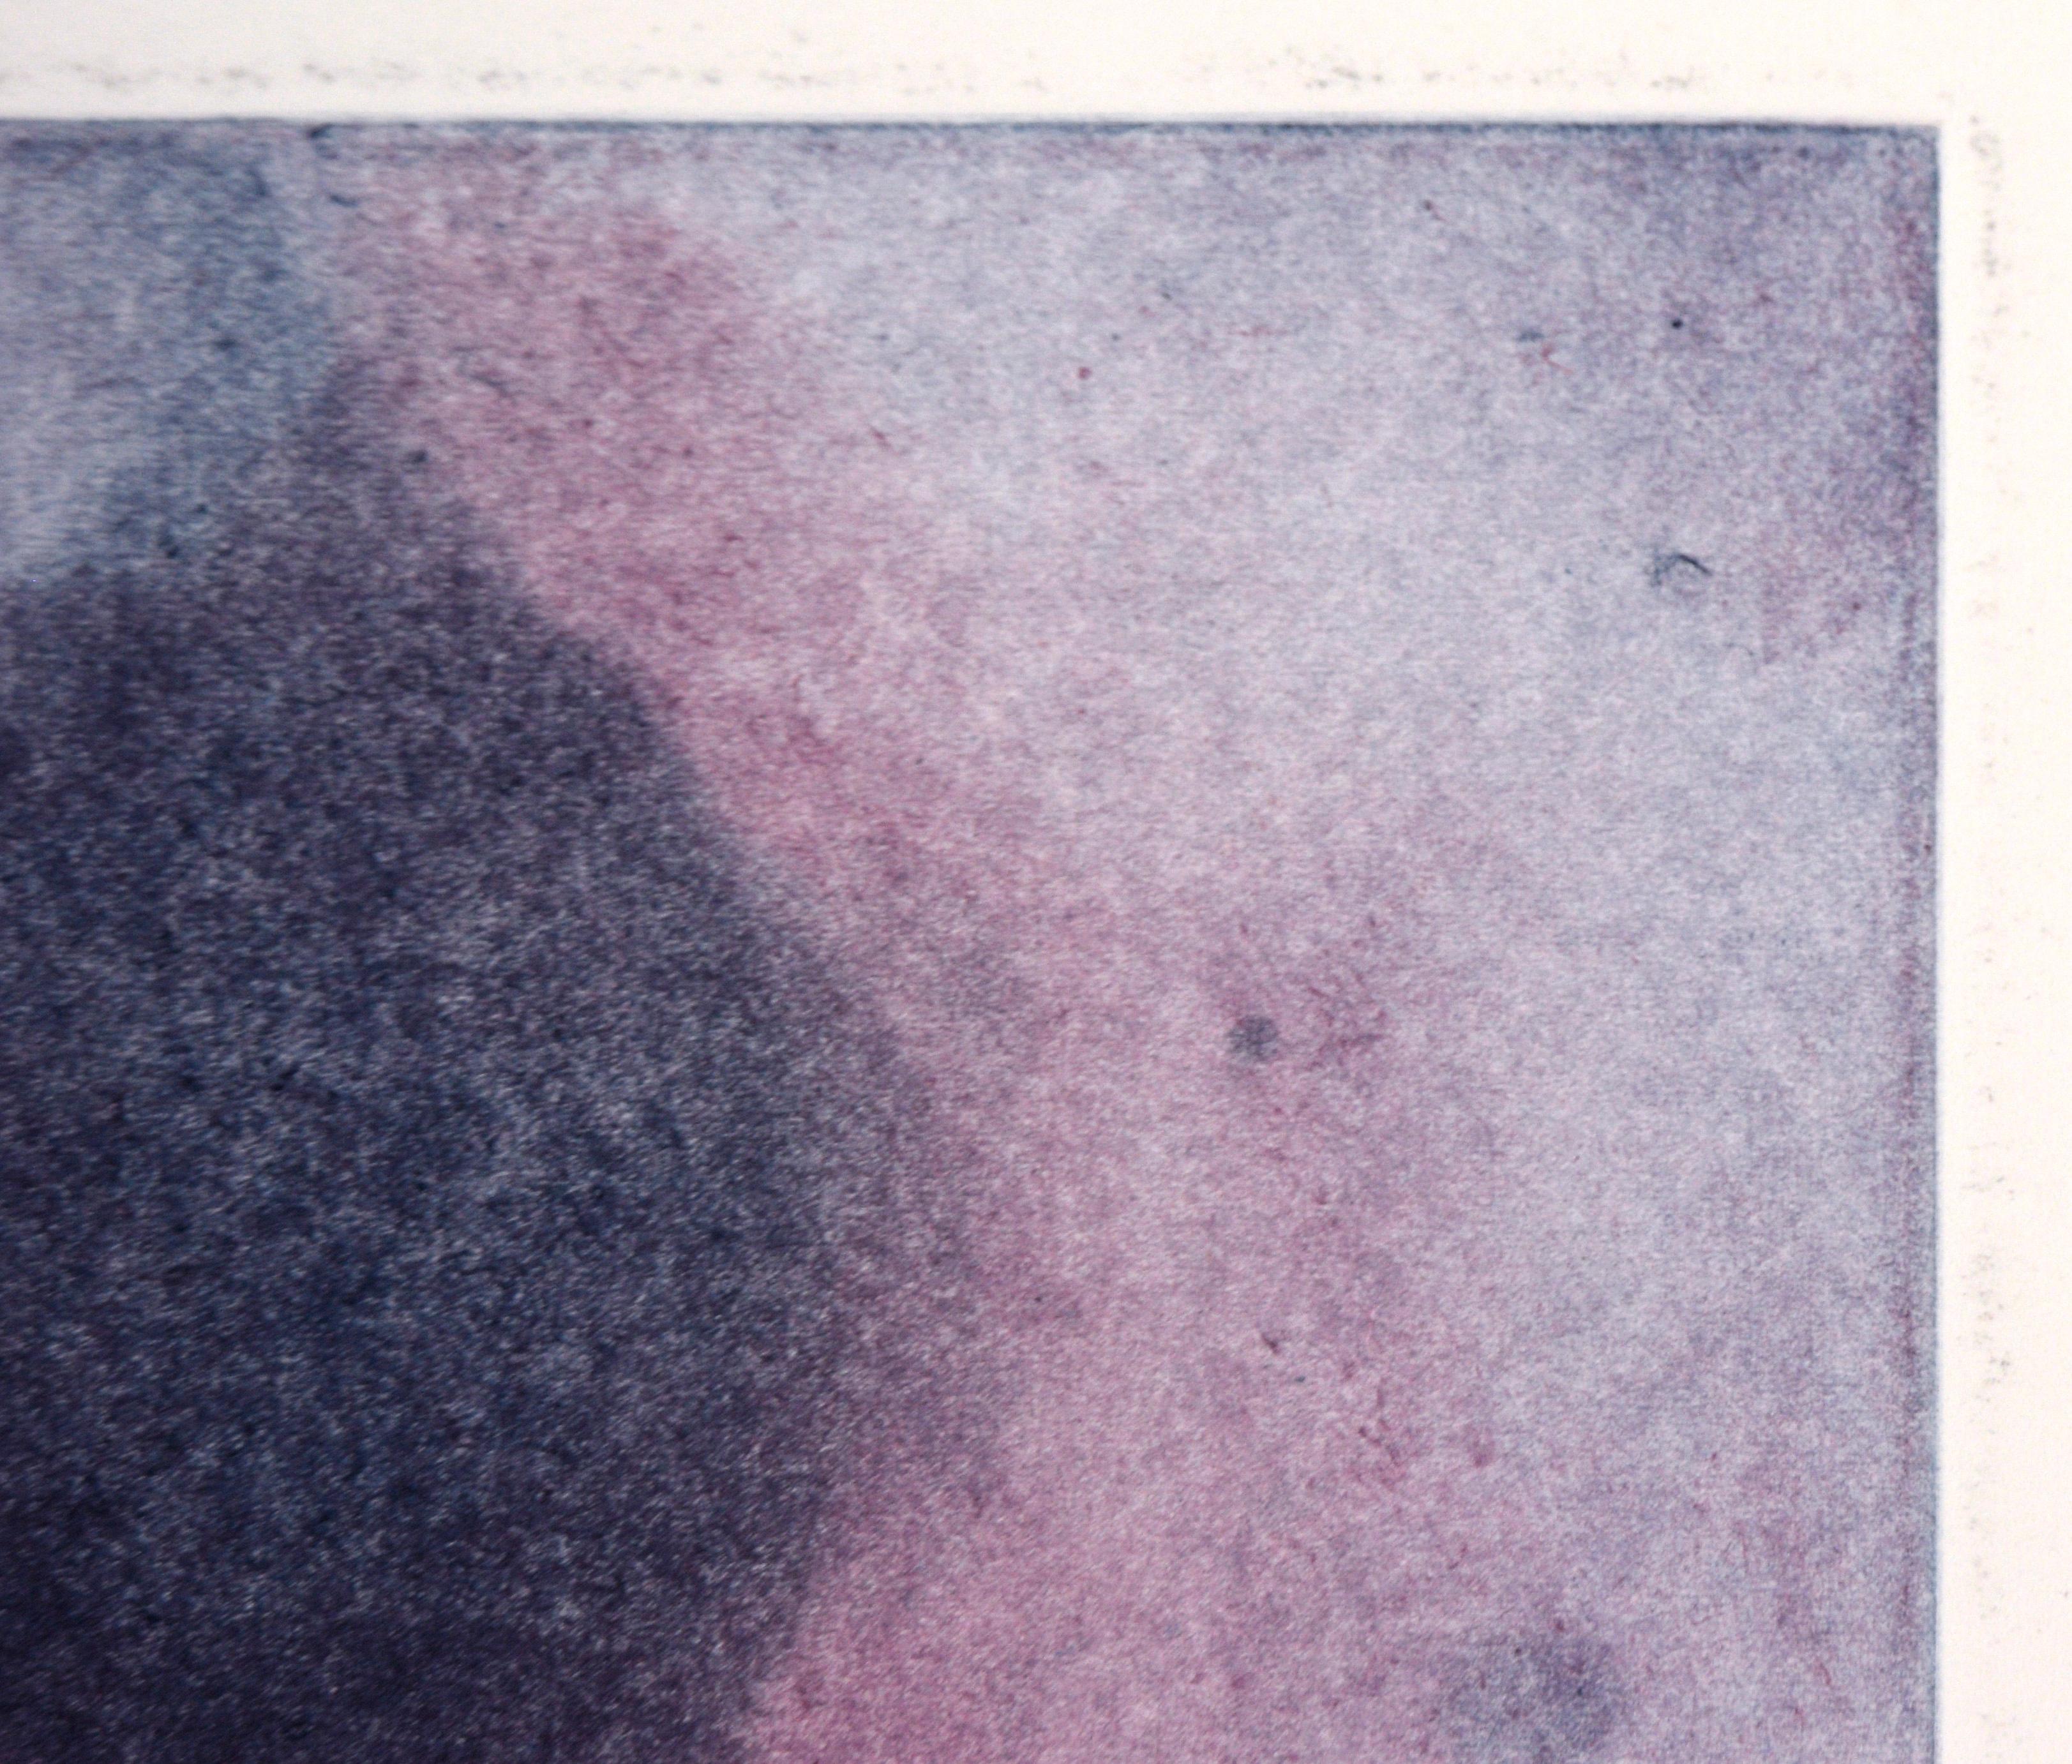 Nebula lavande - Monotype de transfert à l'huile sur papier

Monotype original peint à la main et transféré par l'artiste californienne Heather Speck (américaine, C.C.). Des couches de bleu, de violet et de magenta créent une forme abstraite